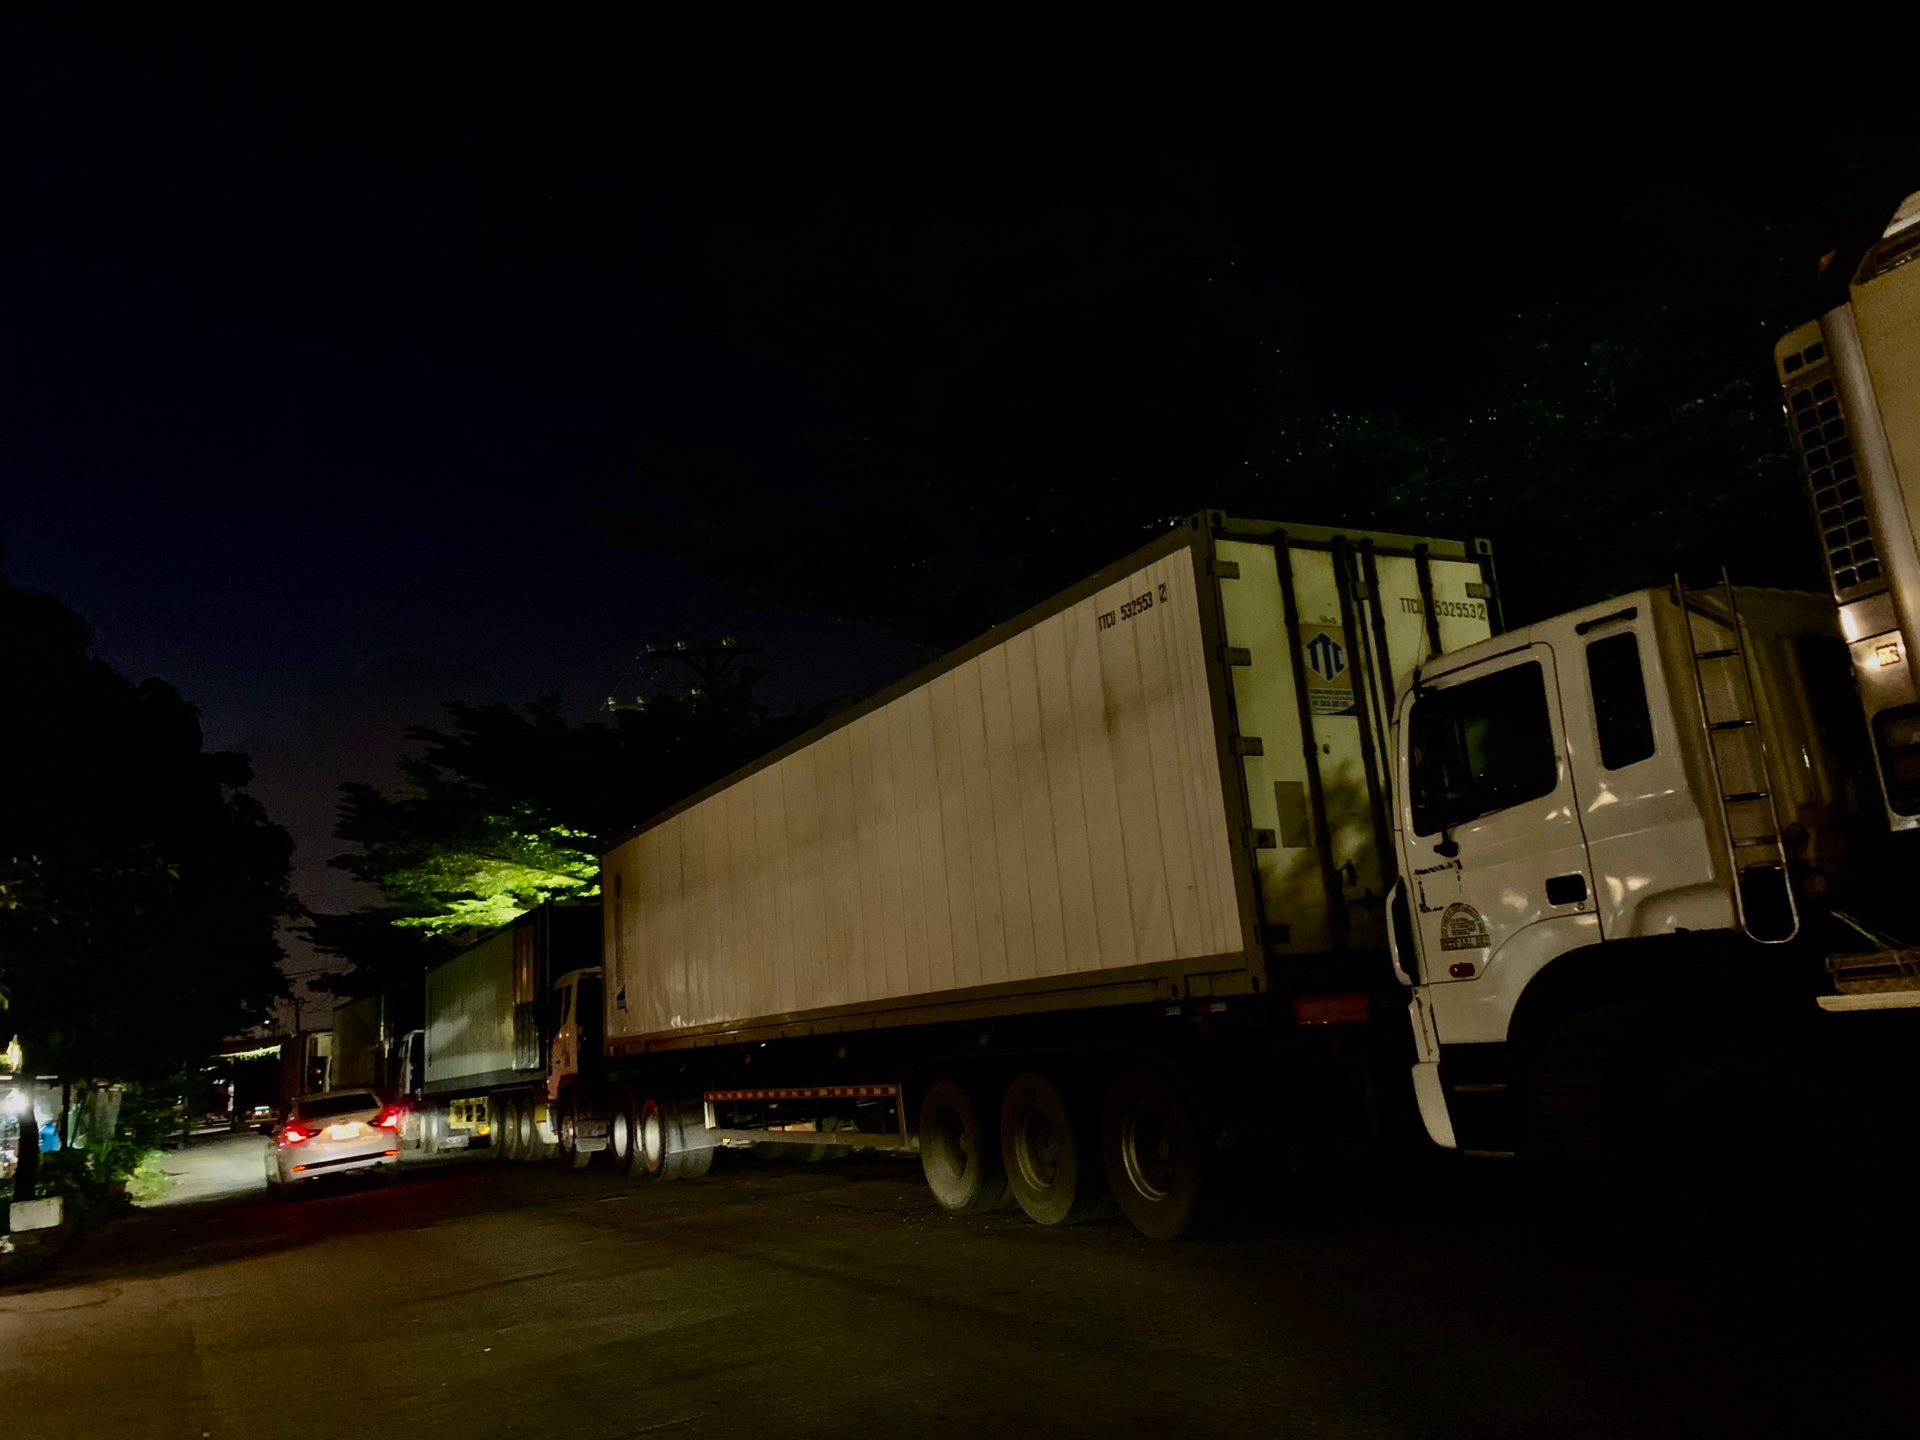 Hiện người dân phải đi nhờ đường D8 của công ty TNHH Preferred Freezer Services Viet Nam tự bỏ kinh phí xây dựng. Tuyến đường không đảm bảo đèn chiếu sáng vào ban đêm, điều này tiềm ẩn nhiều nguy cơ xảy ra tai nạn giao thông khi người dân phải song hành cùng container.